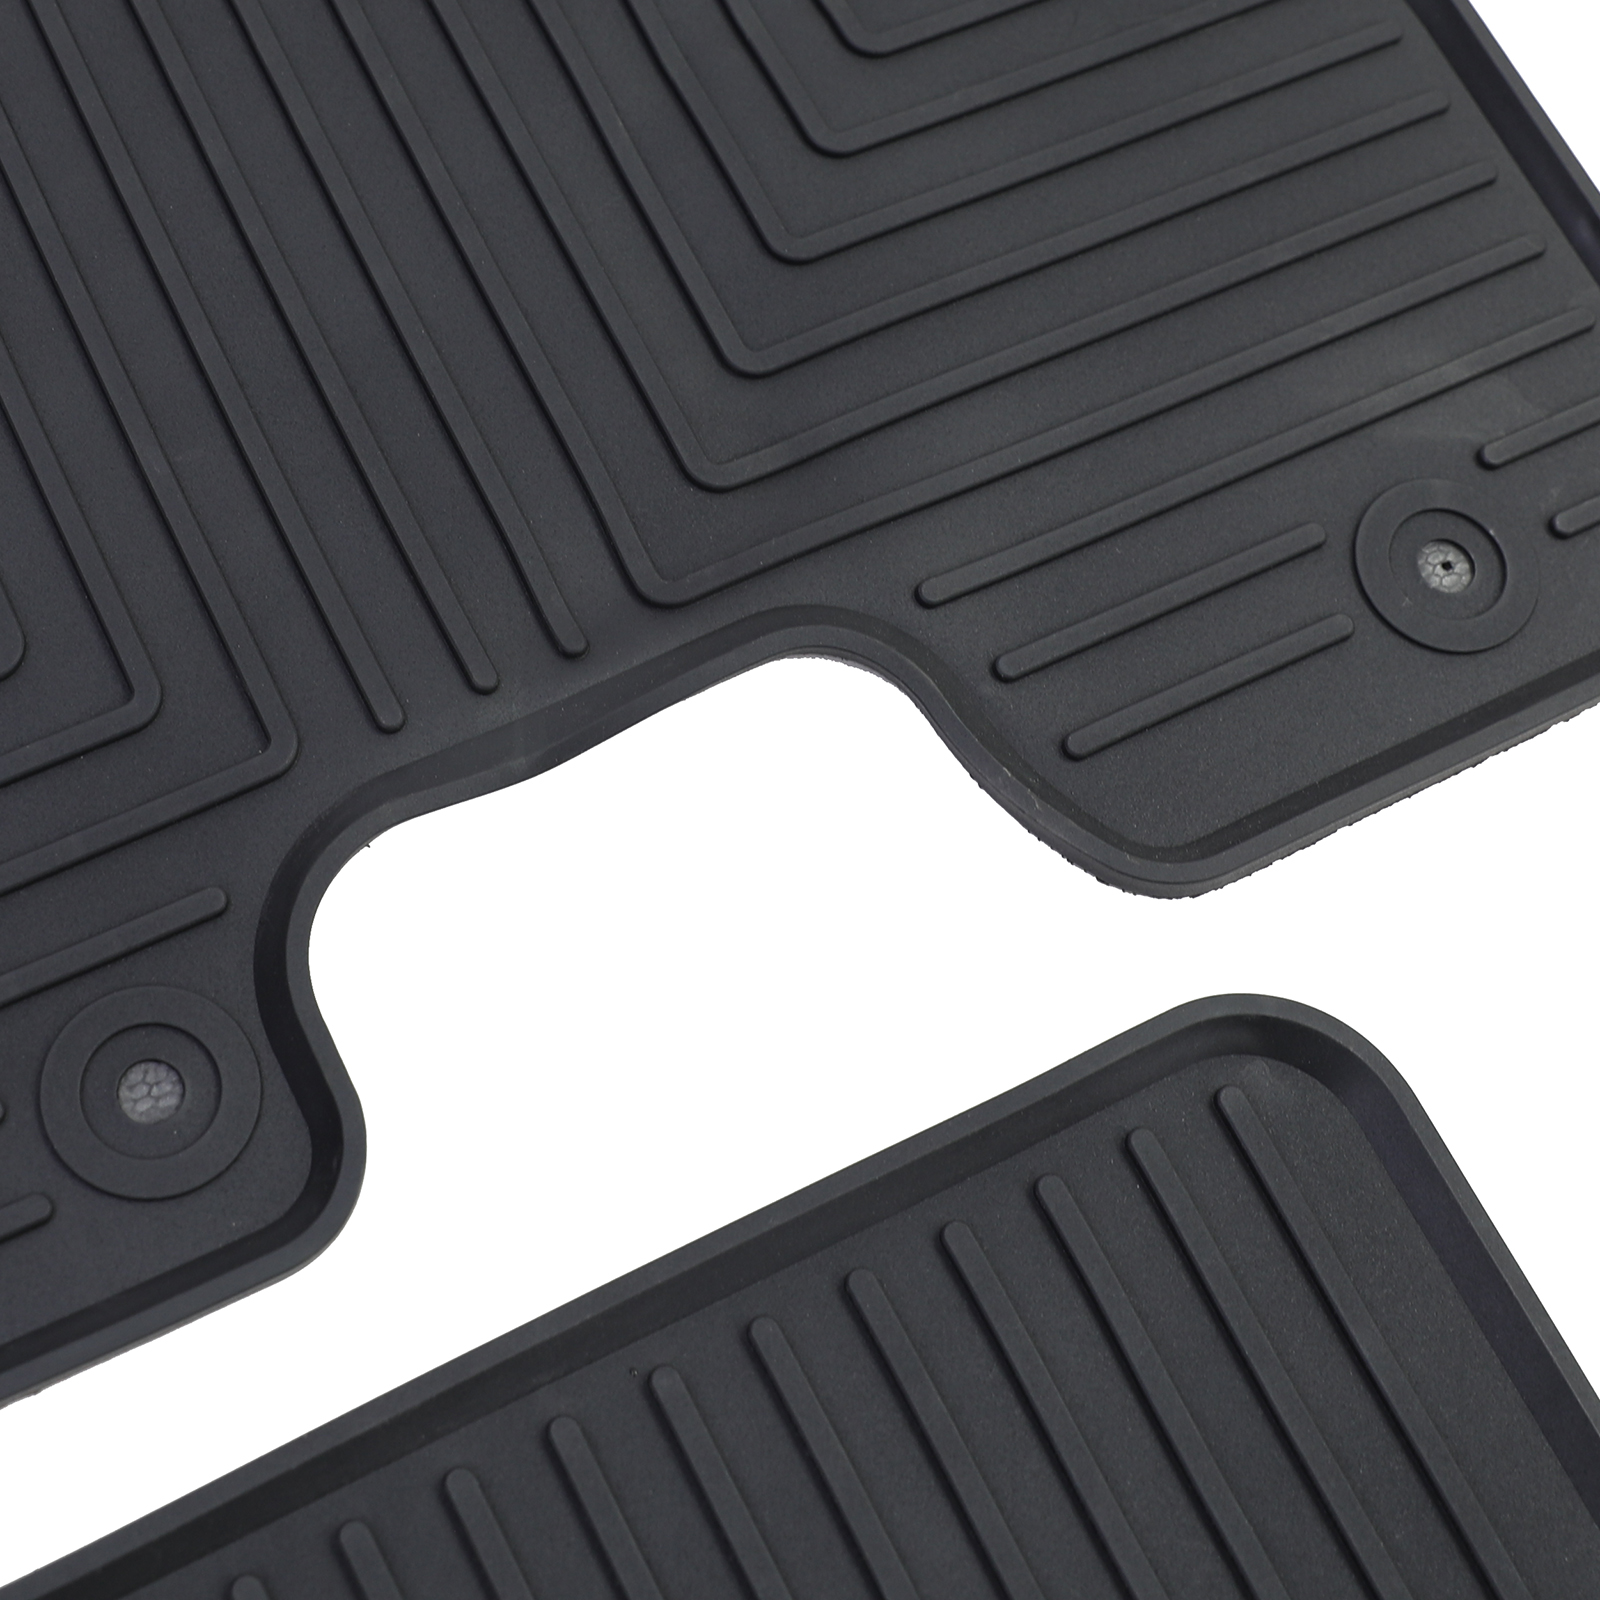 Auto Gummi Fußmatten Schwarz Premium Set für Hyundai Tucson JM 04-10 kaufen